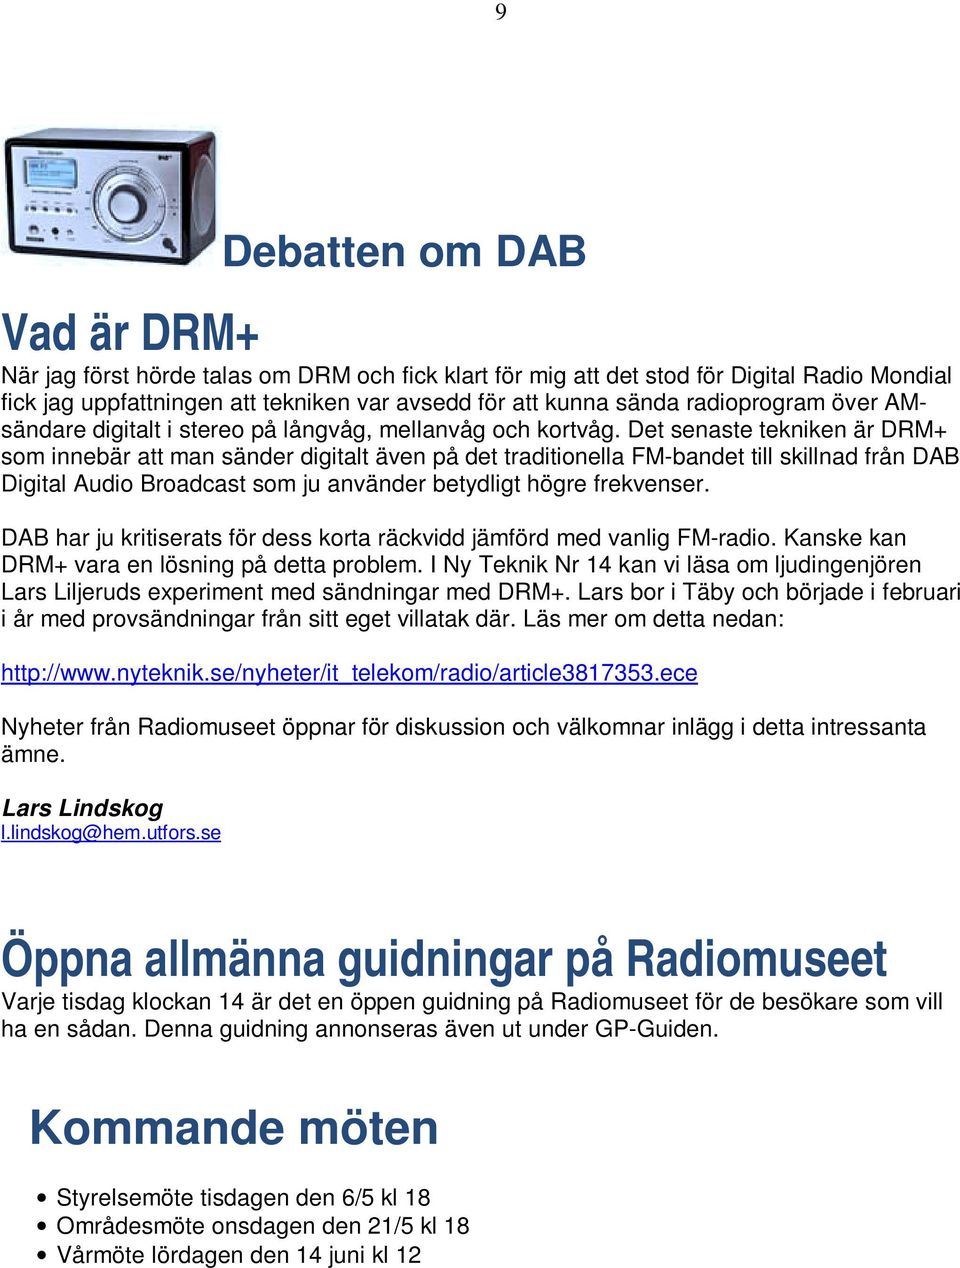 Det senaste tekniken är DRM+ som innebär att man sänder digitalt även på det traditionella FM-bandet till skillnad från DAB Digital Audio Broadcast som ju använder betydligt högre frekvenser.